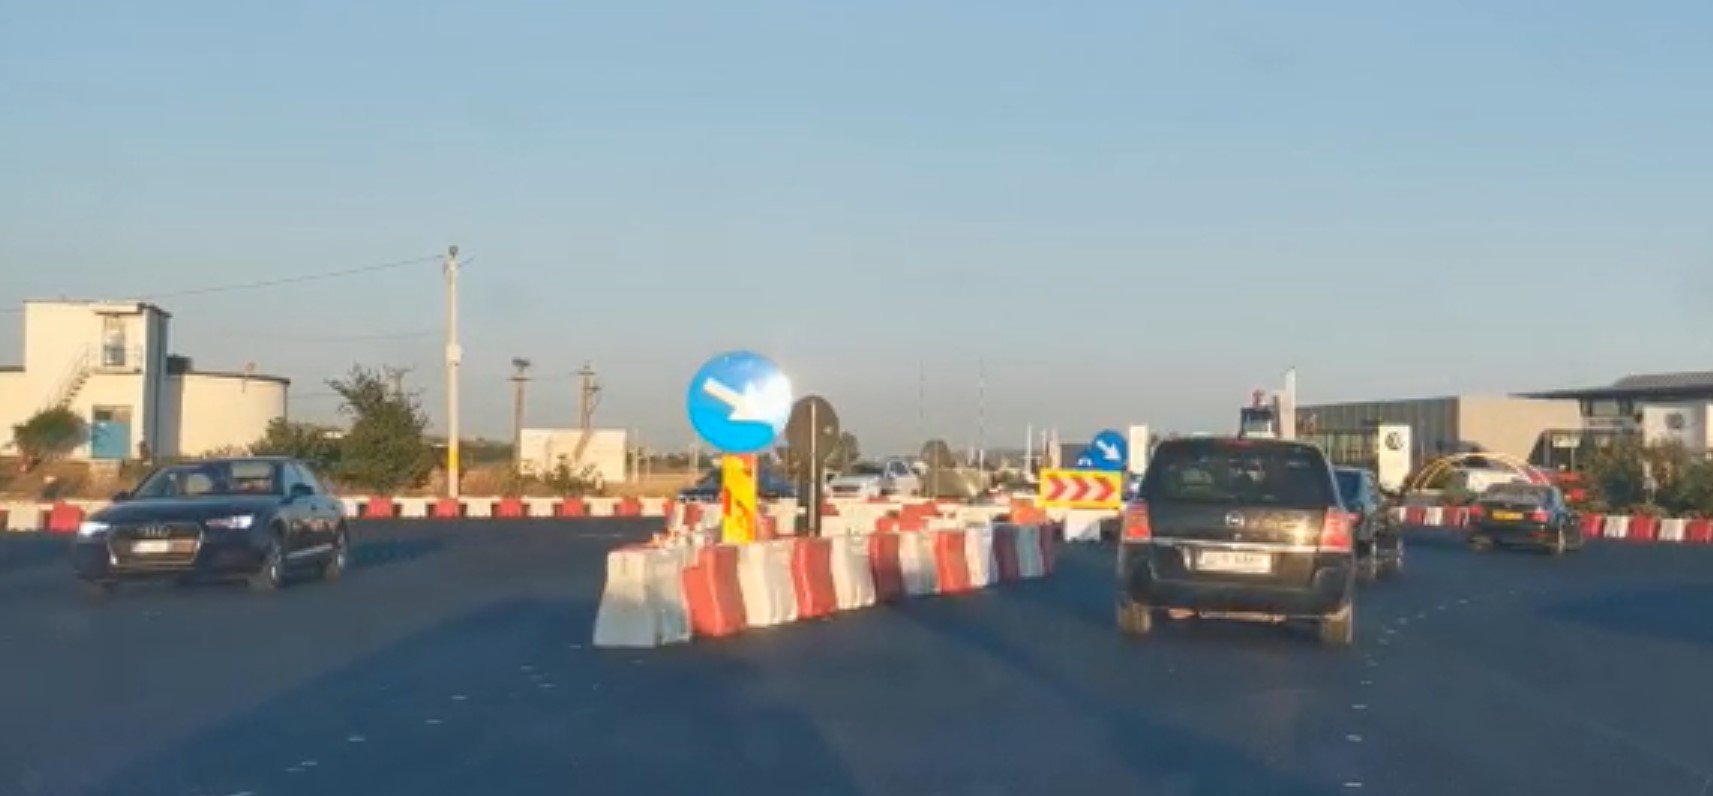  VIDEO: Rondul de la Bogonos-Leţcani a devenit funcţional. Lipsesc doar marcajele albe